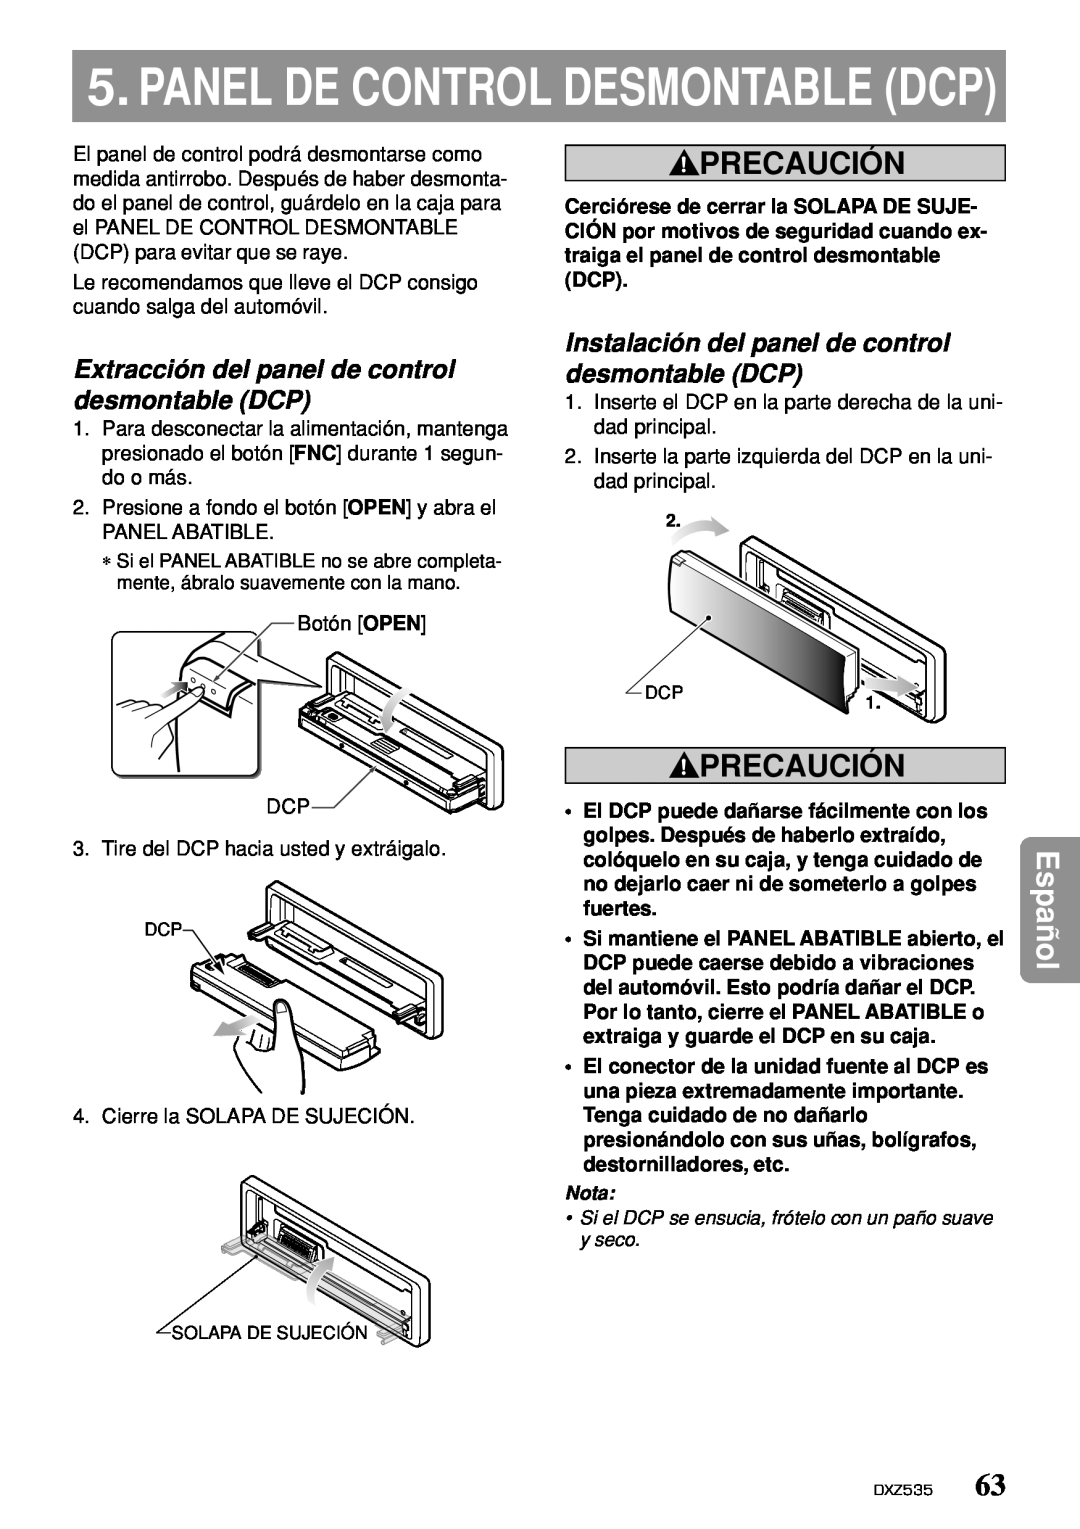 Clarion DXZ535 Panel De Control Desmontable Dcp, Extracción del panel de control desmontable DCP, Precaución, Español 